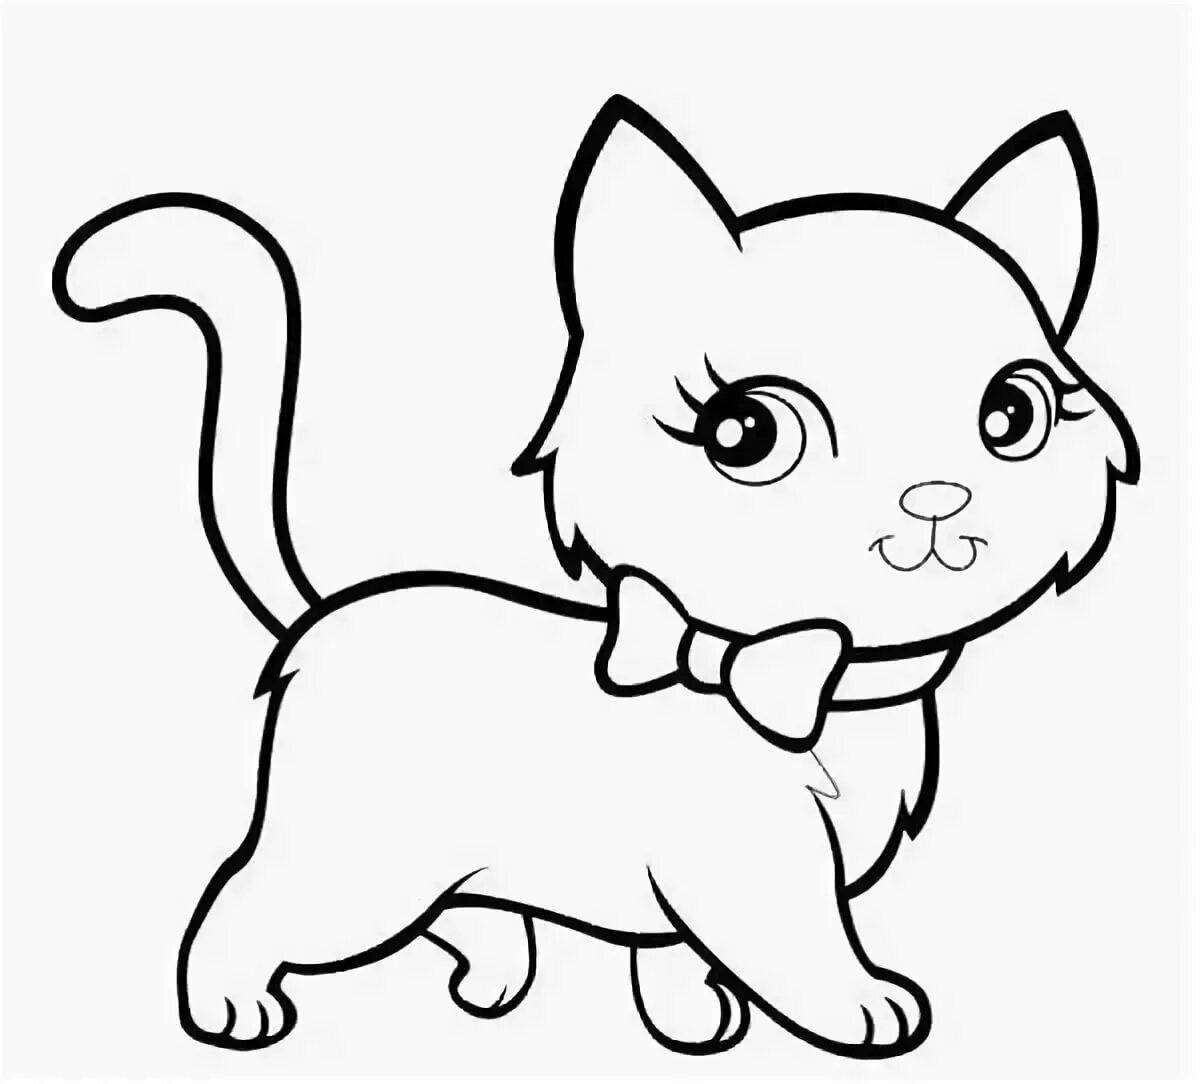 Симпатичная раскраска рисунок кошки